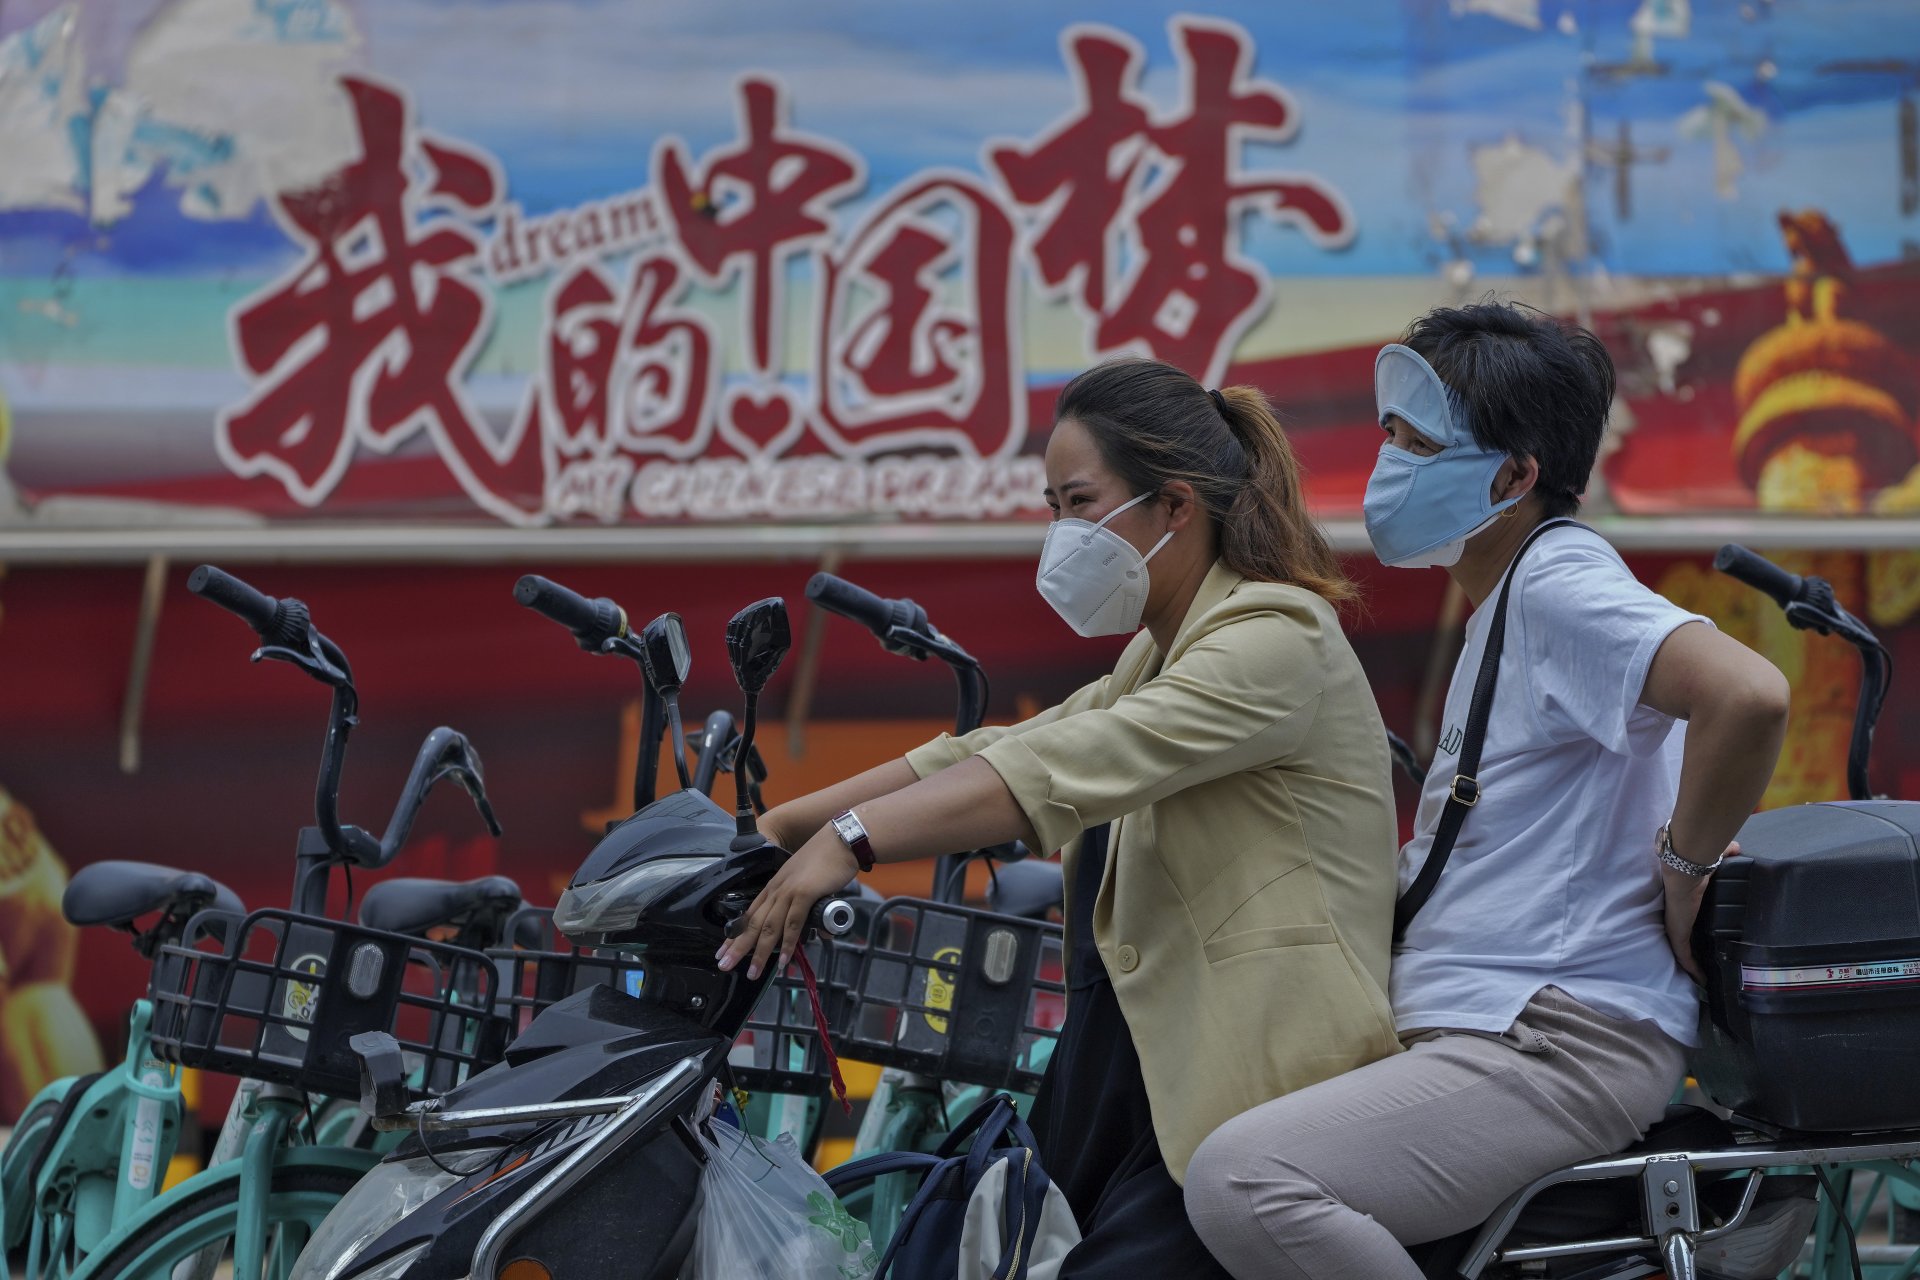 Жени с предпазни маски на скутер на фона на плакат, популяризиращ "китайската мечта", Пекин, понеделник, 20 юни 2022 г.